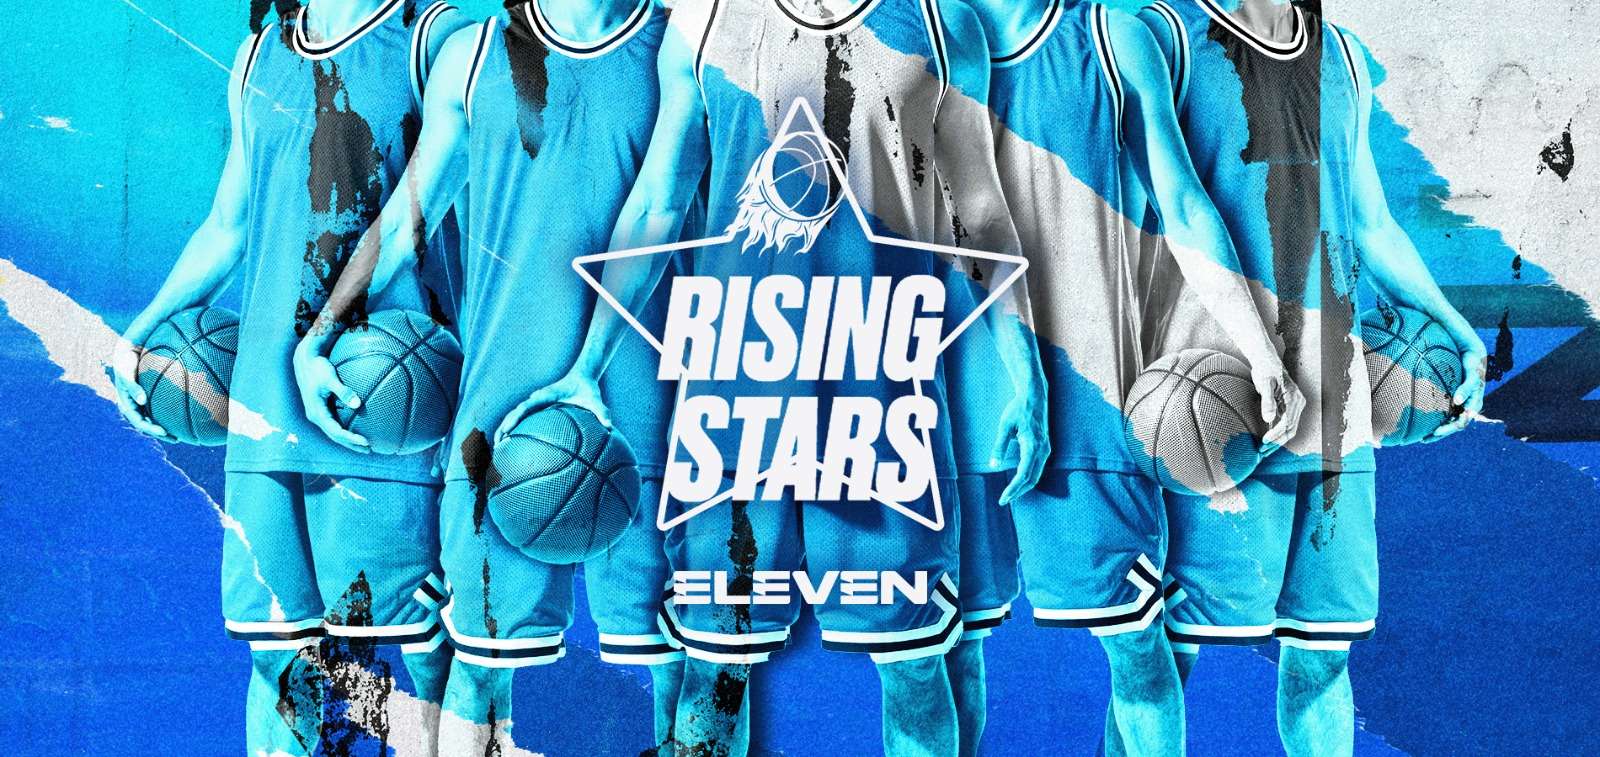 Foto - Rising Stars, nuovo format Eleven Sports, sui giovani talenti emergenti del basket